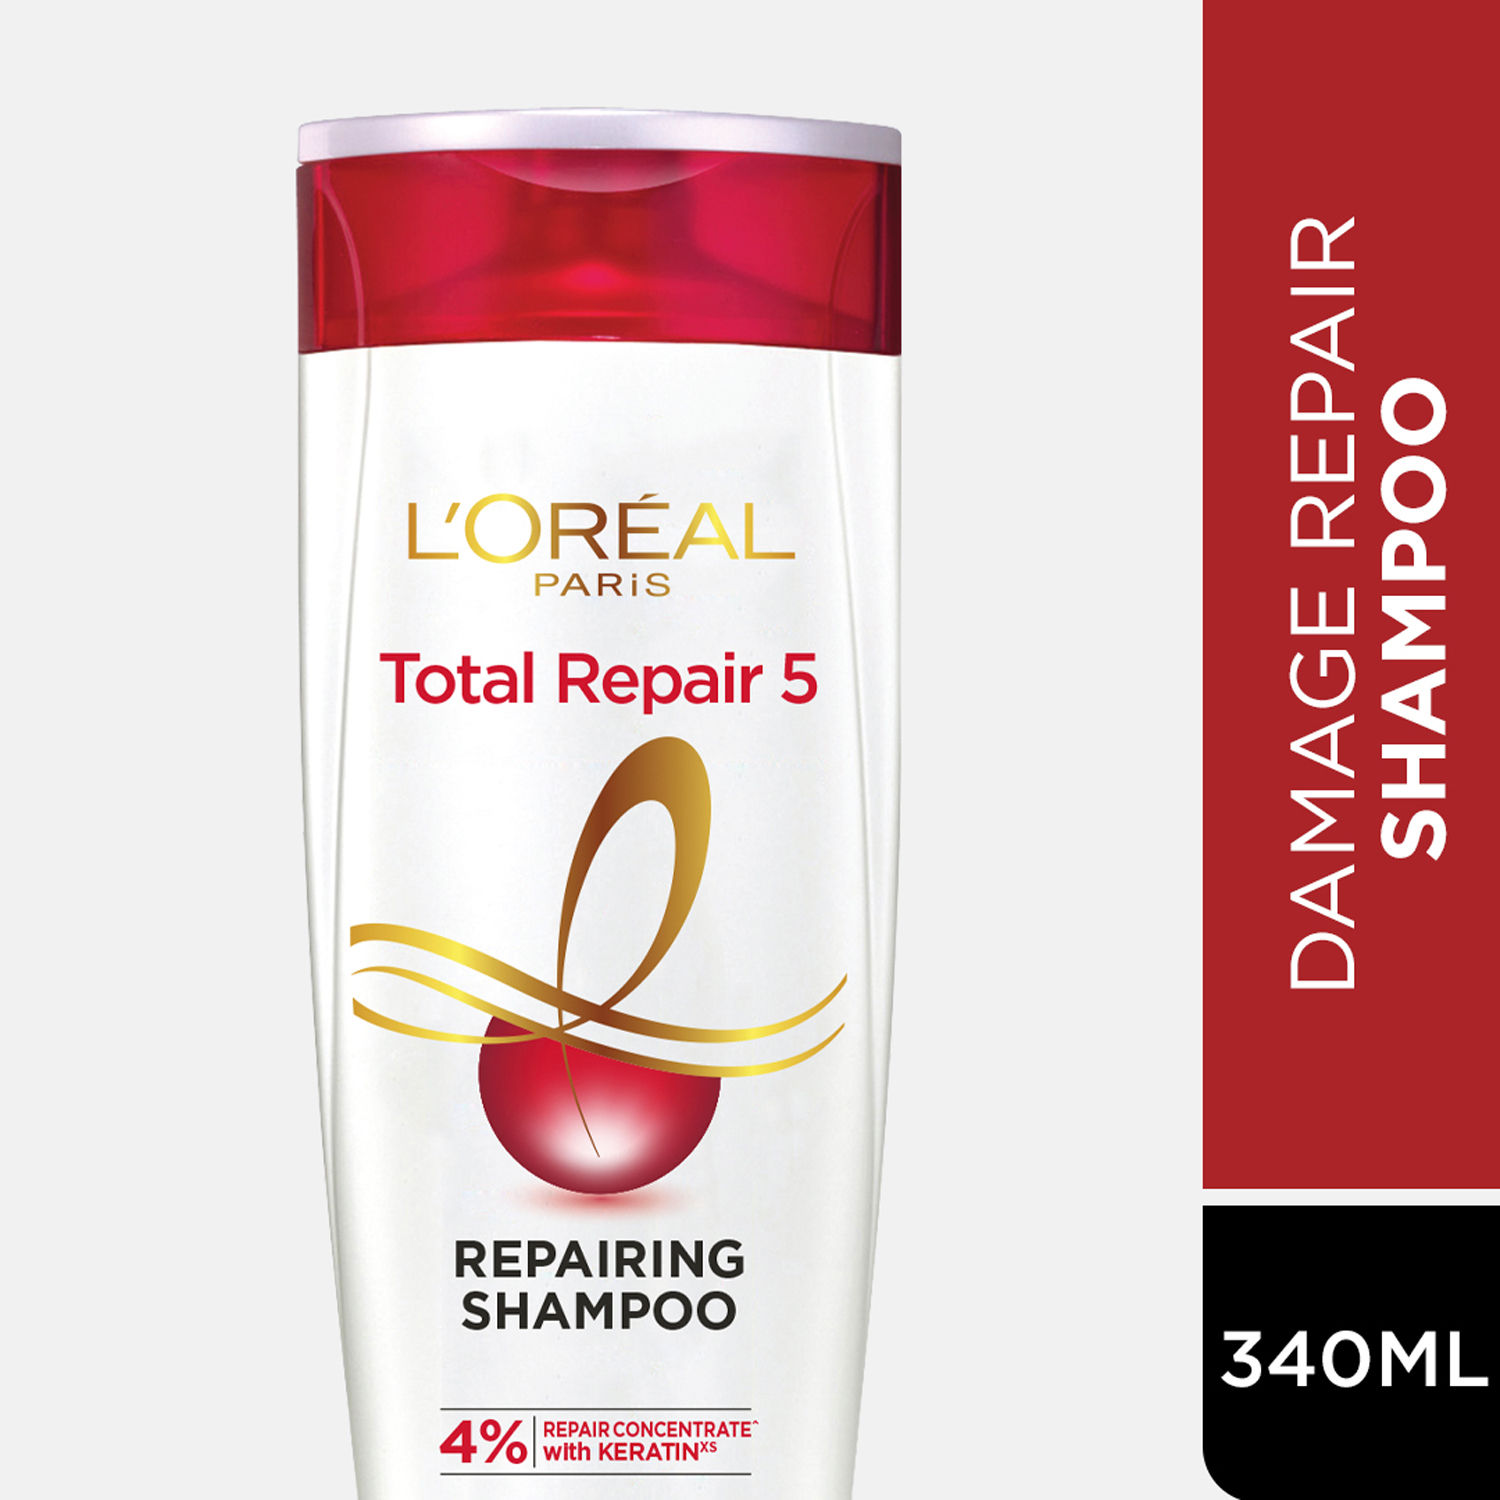 L'Oreal Paris Total Repair 5 Shampoo (360 ml)